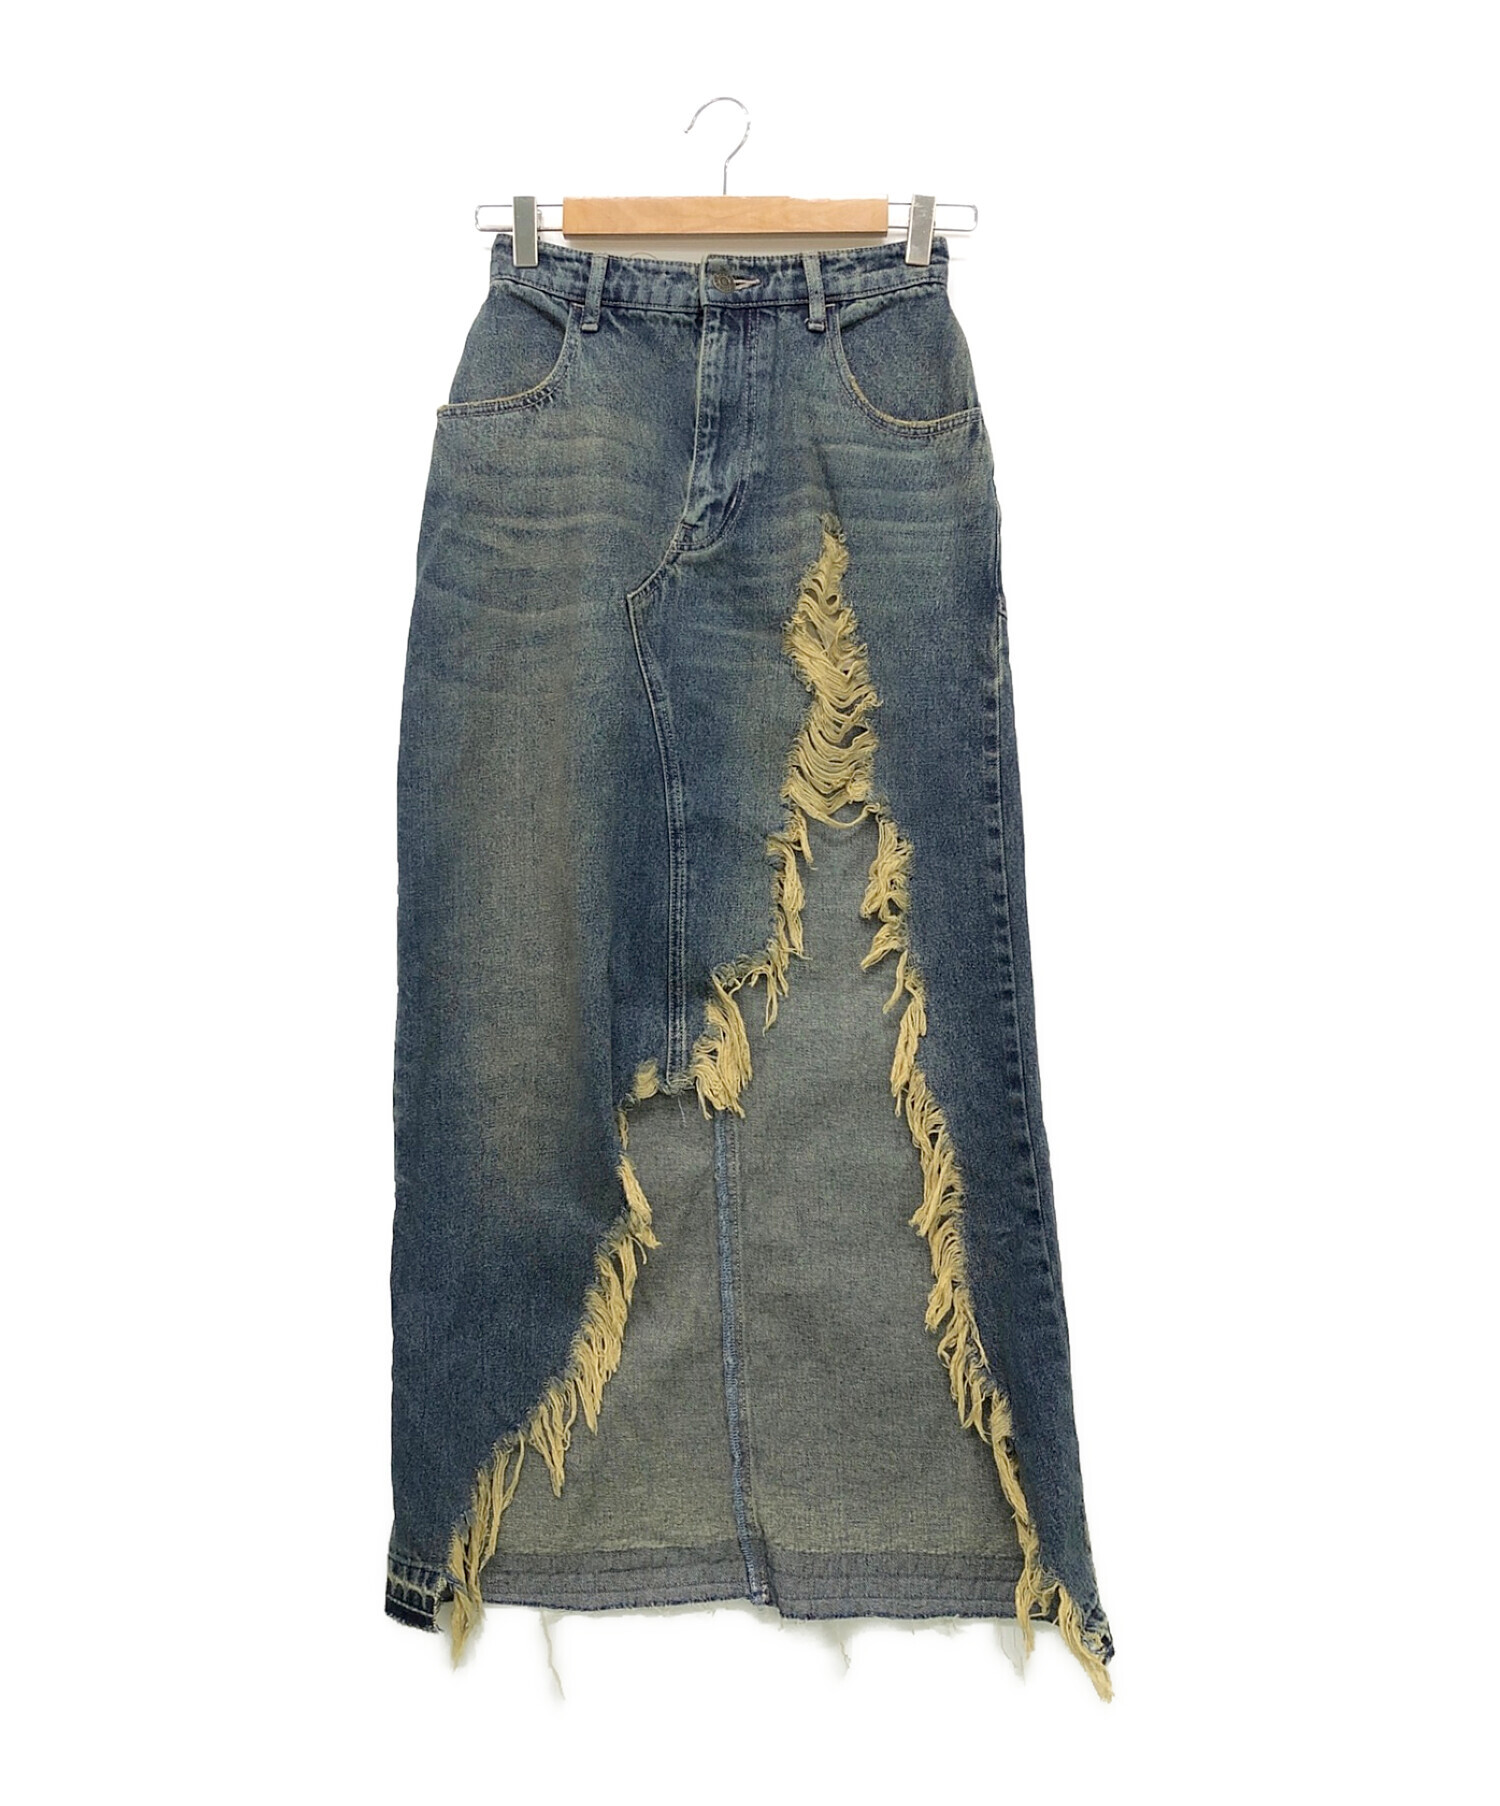 18500円でしたらACLENT Vintage fringe denim skirt